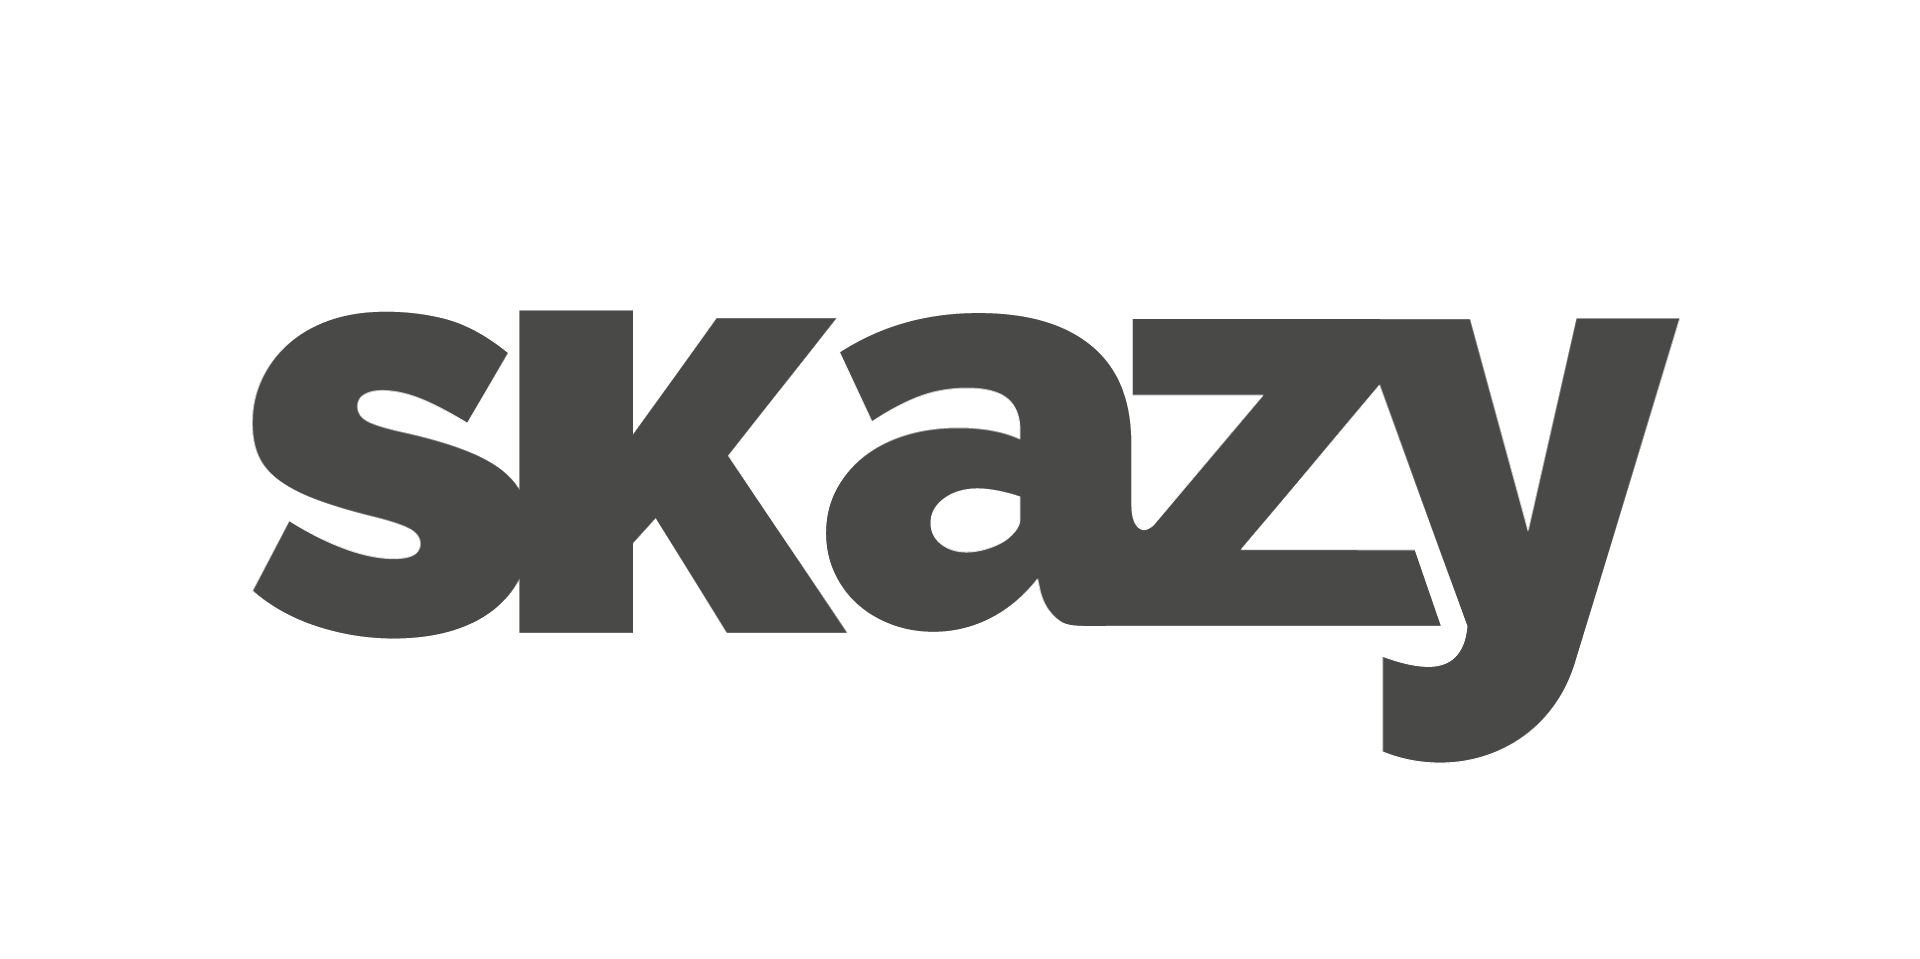 skazy, agence numérique à 360 en Nouvelle-Calédonie